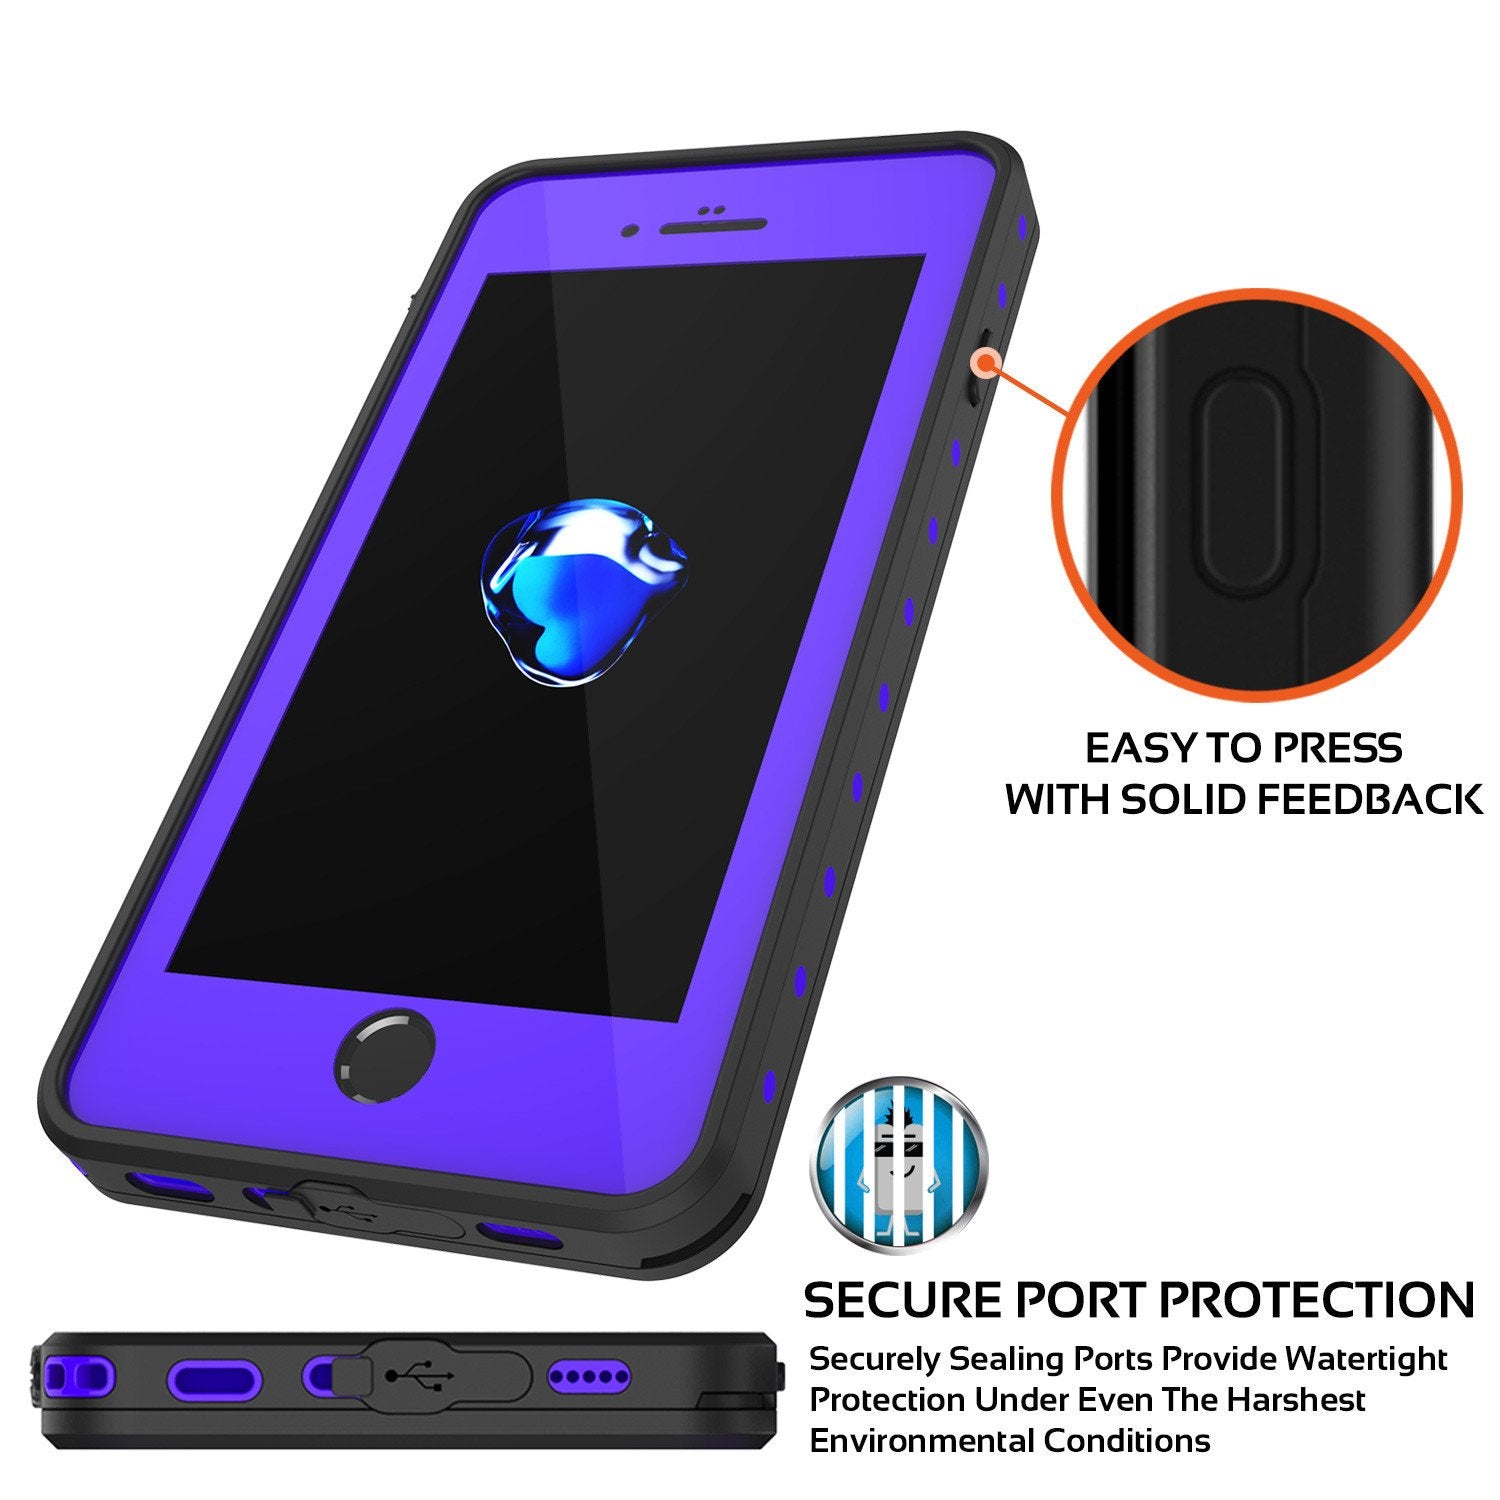 iPhone 7s Plus Waterproof Case, Punkcase [Purple] [StudStar Series] [Slim Fit] [IP68 Certified] [Shockproof] [Dirtproof] [Snowproof] Armor Cover for Apple iPhone 7 Plus & 7s +